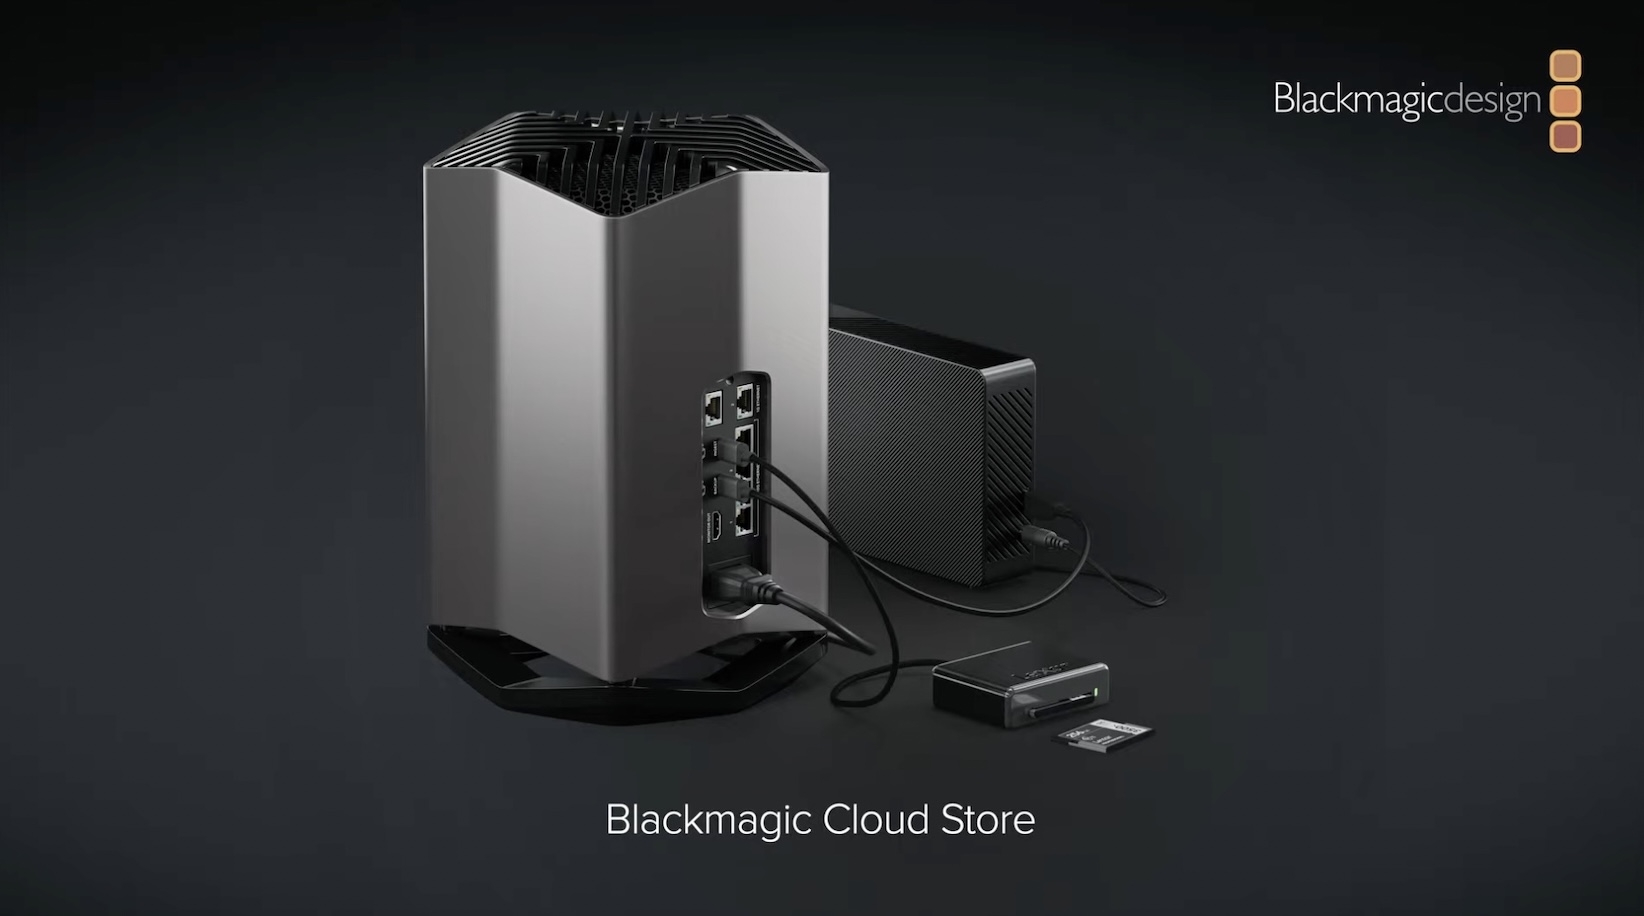 Blackmagic Design Announces New Blackmagic Cloud Store